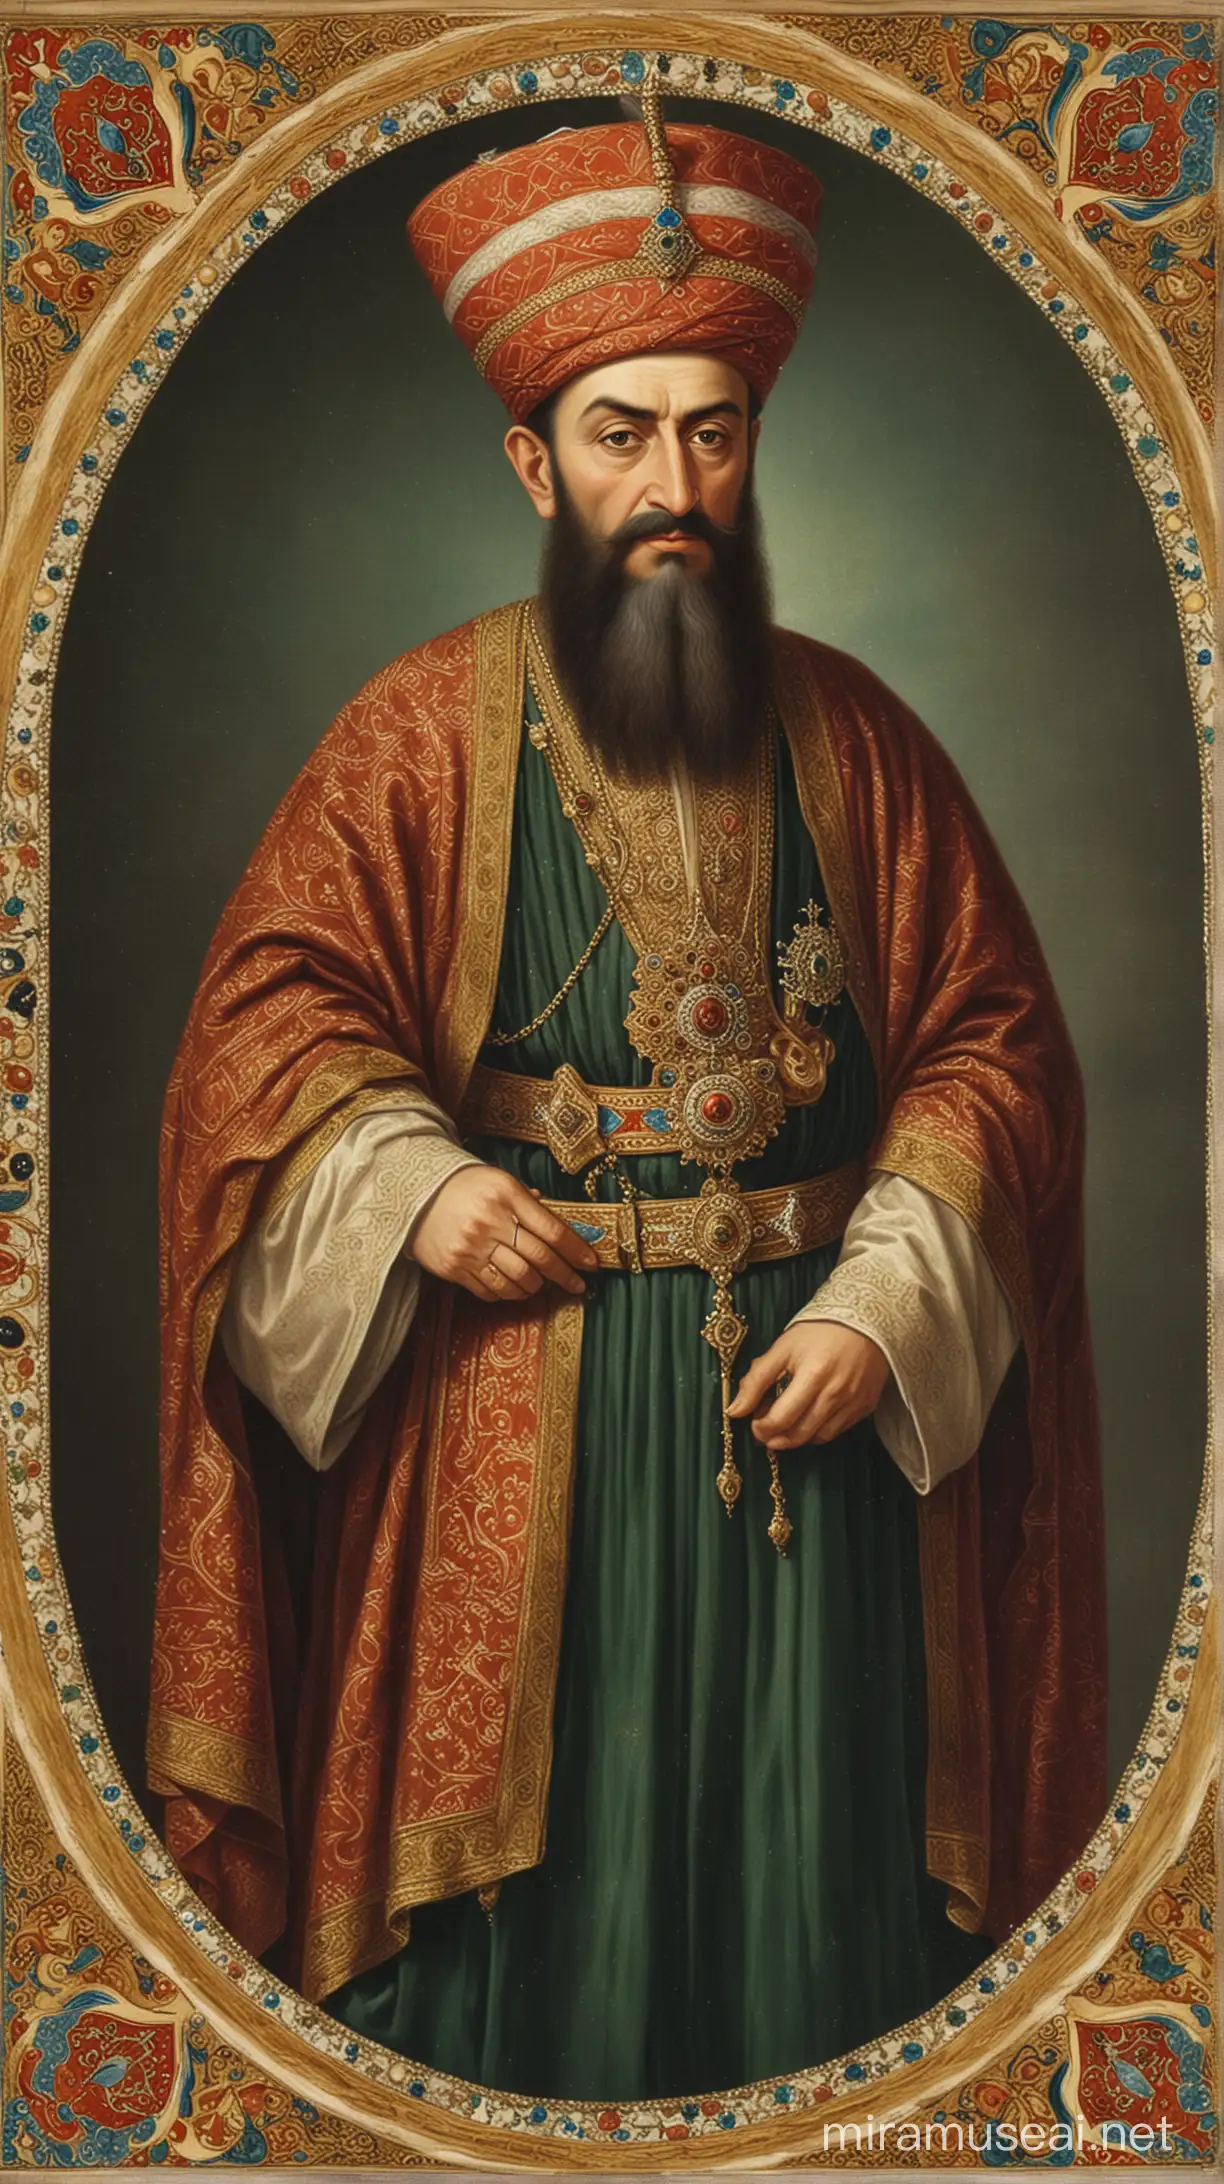 Portrait of Grand Vizier in Ottoman Miniature from Murad IV Era